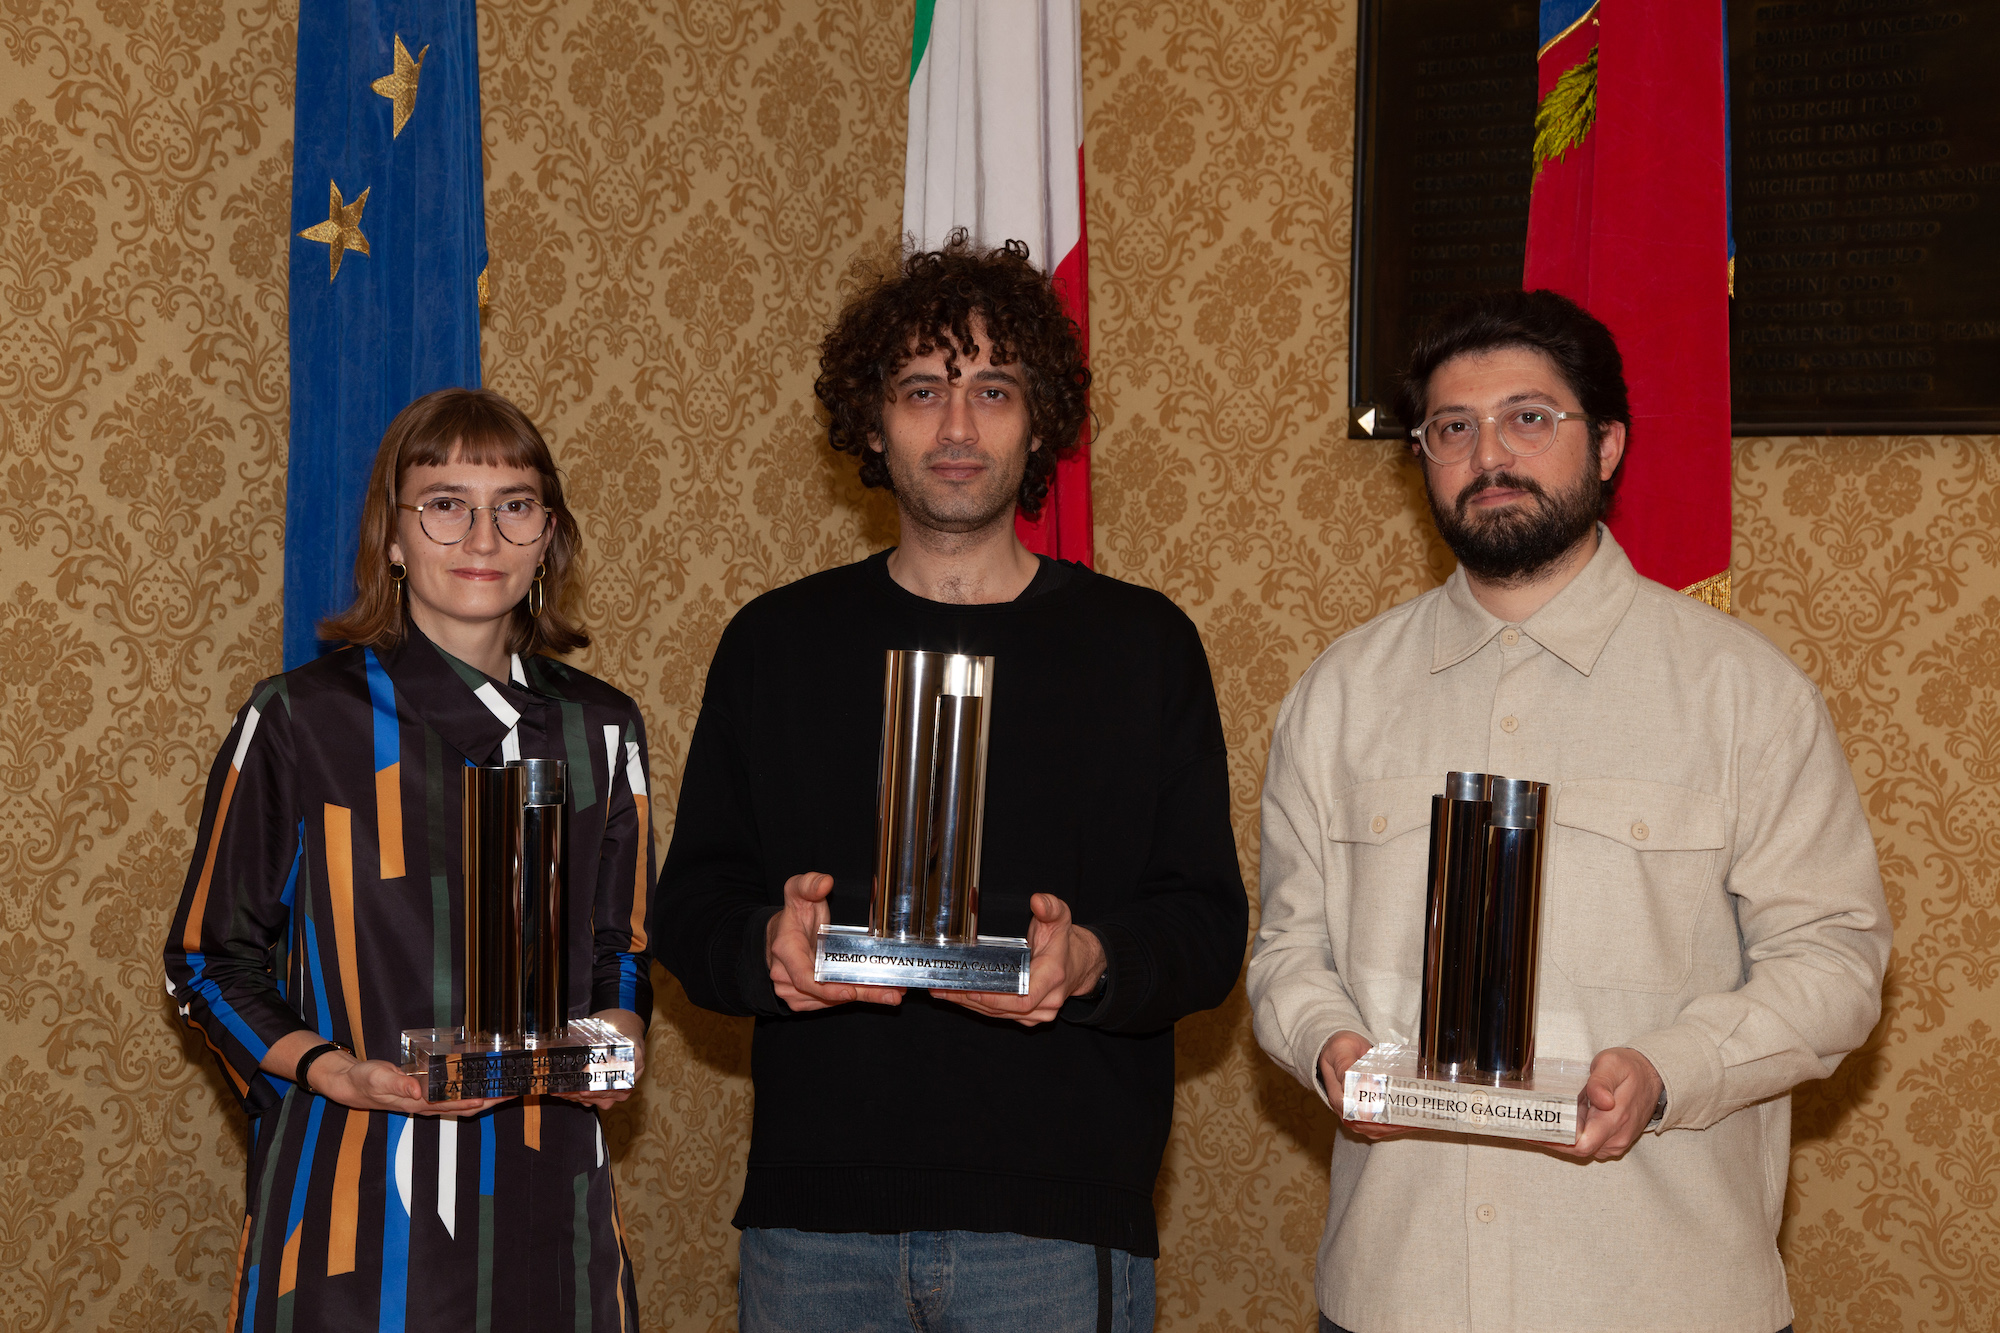 Premio “Giovan Battista Calapai e Theodora van Mierlo Benedetti”